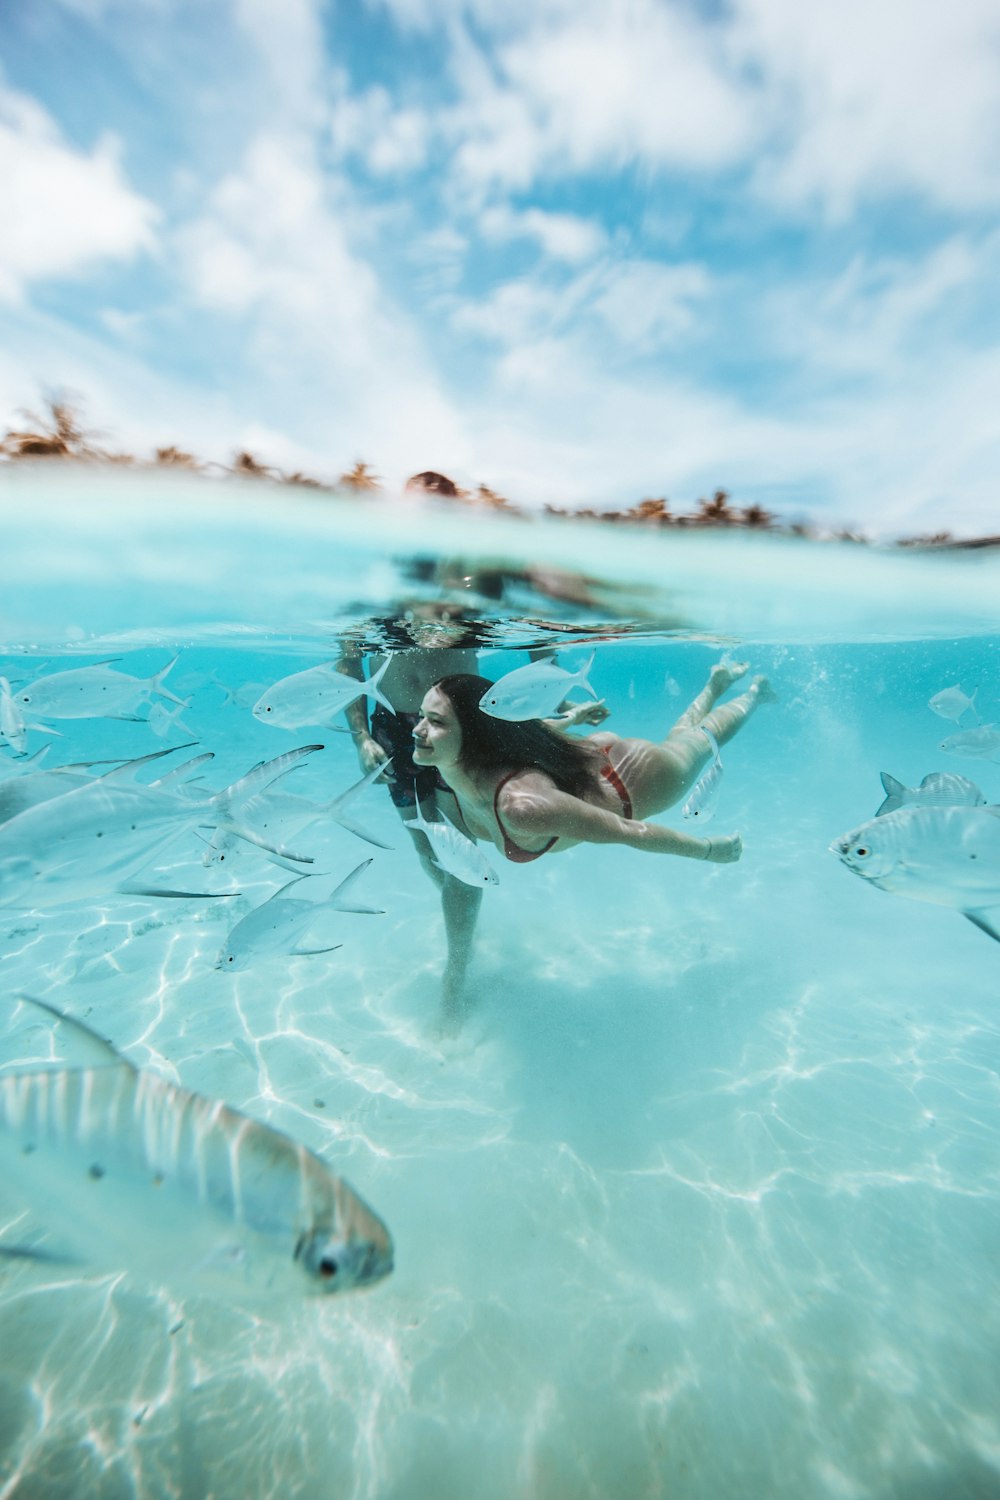 dos personas buceando en un cuerpo de agua transparente